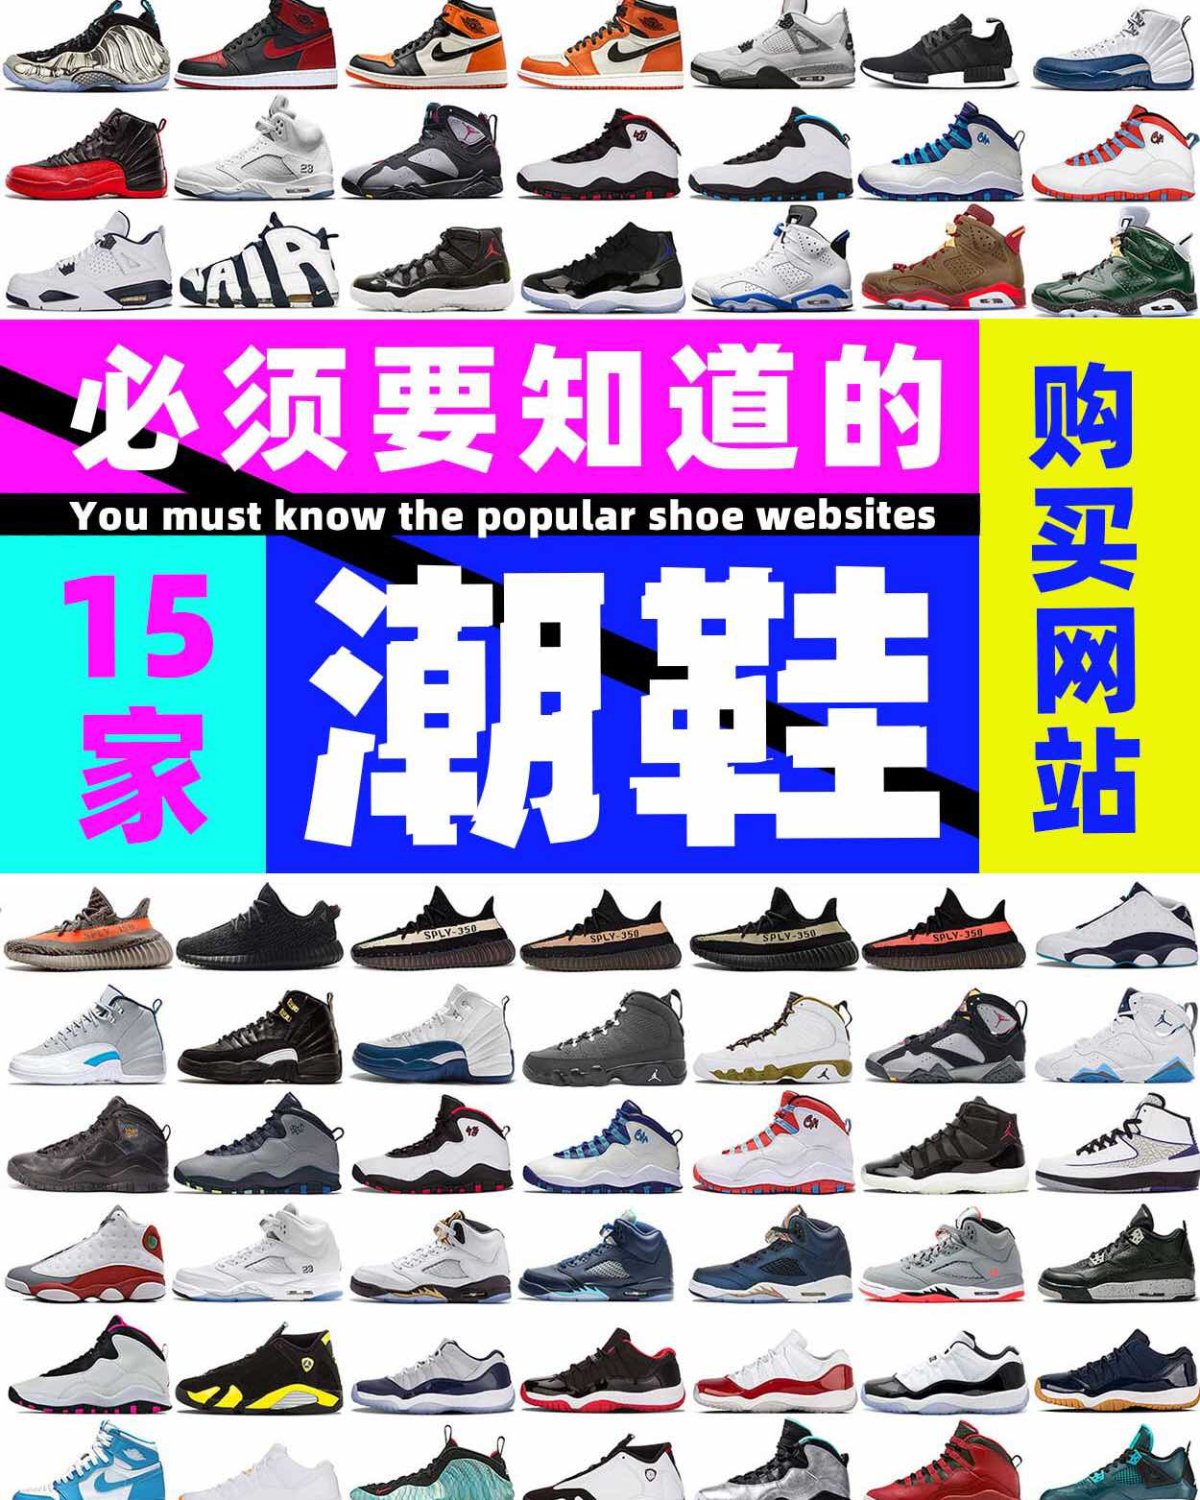 海淘鞋子必须要知道的🔥15家海淘鞋子网站❗️  🔥苏苏汇